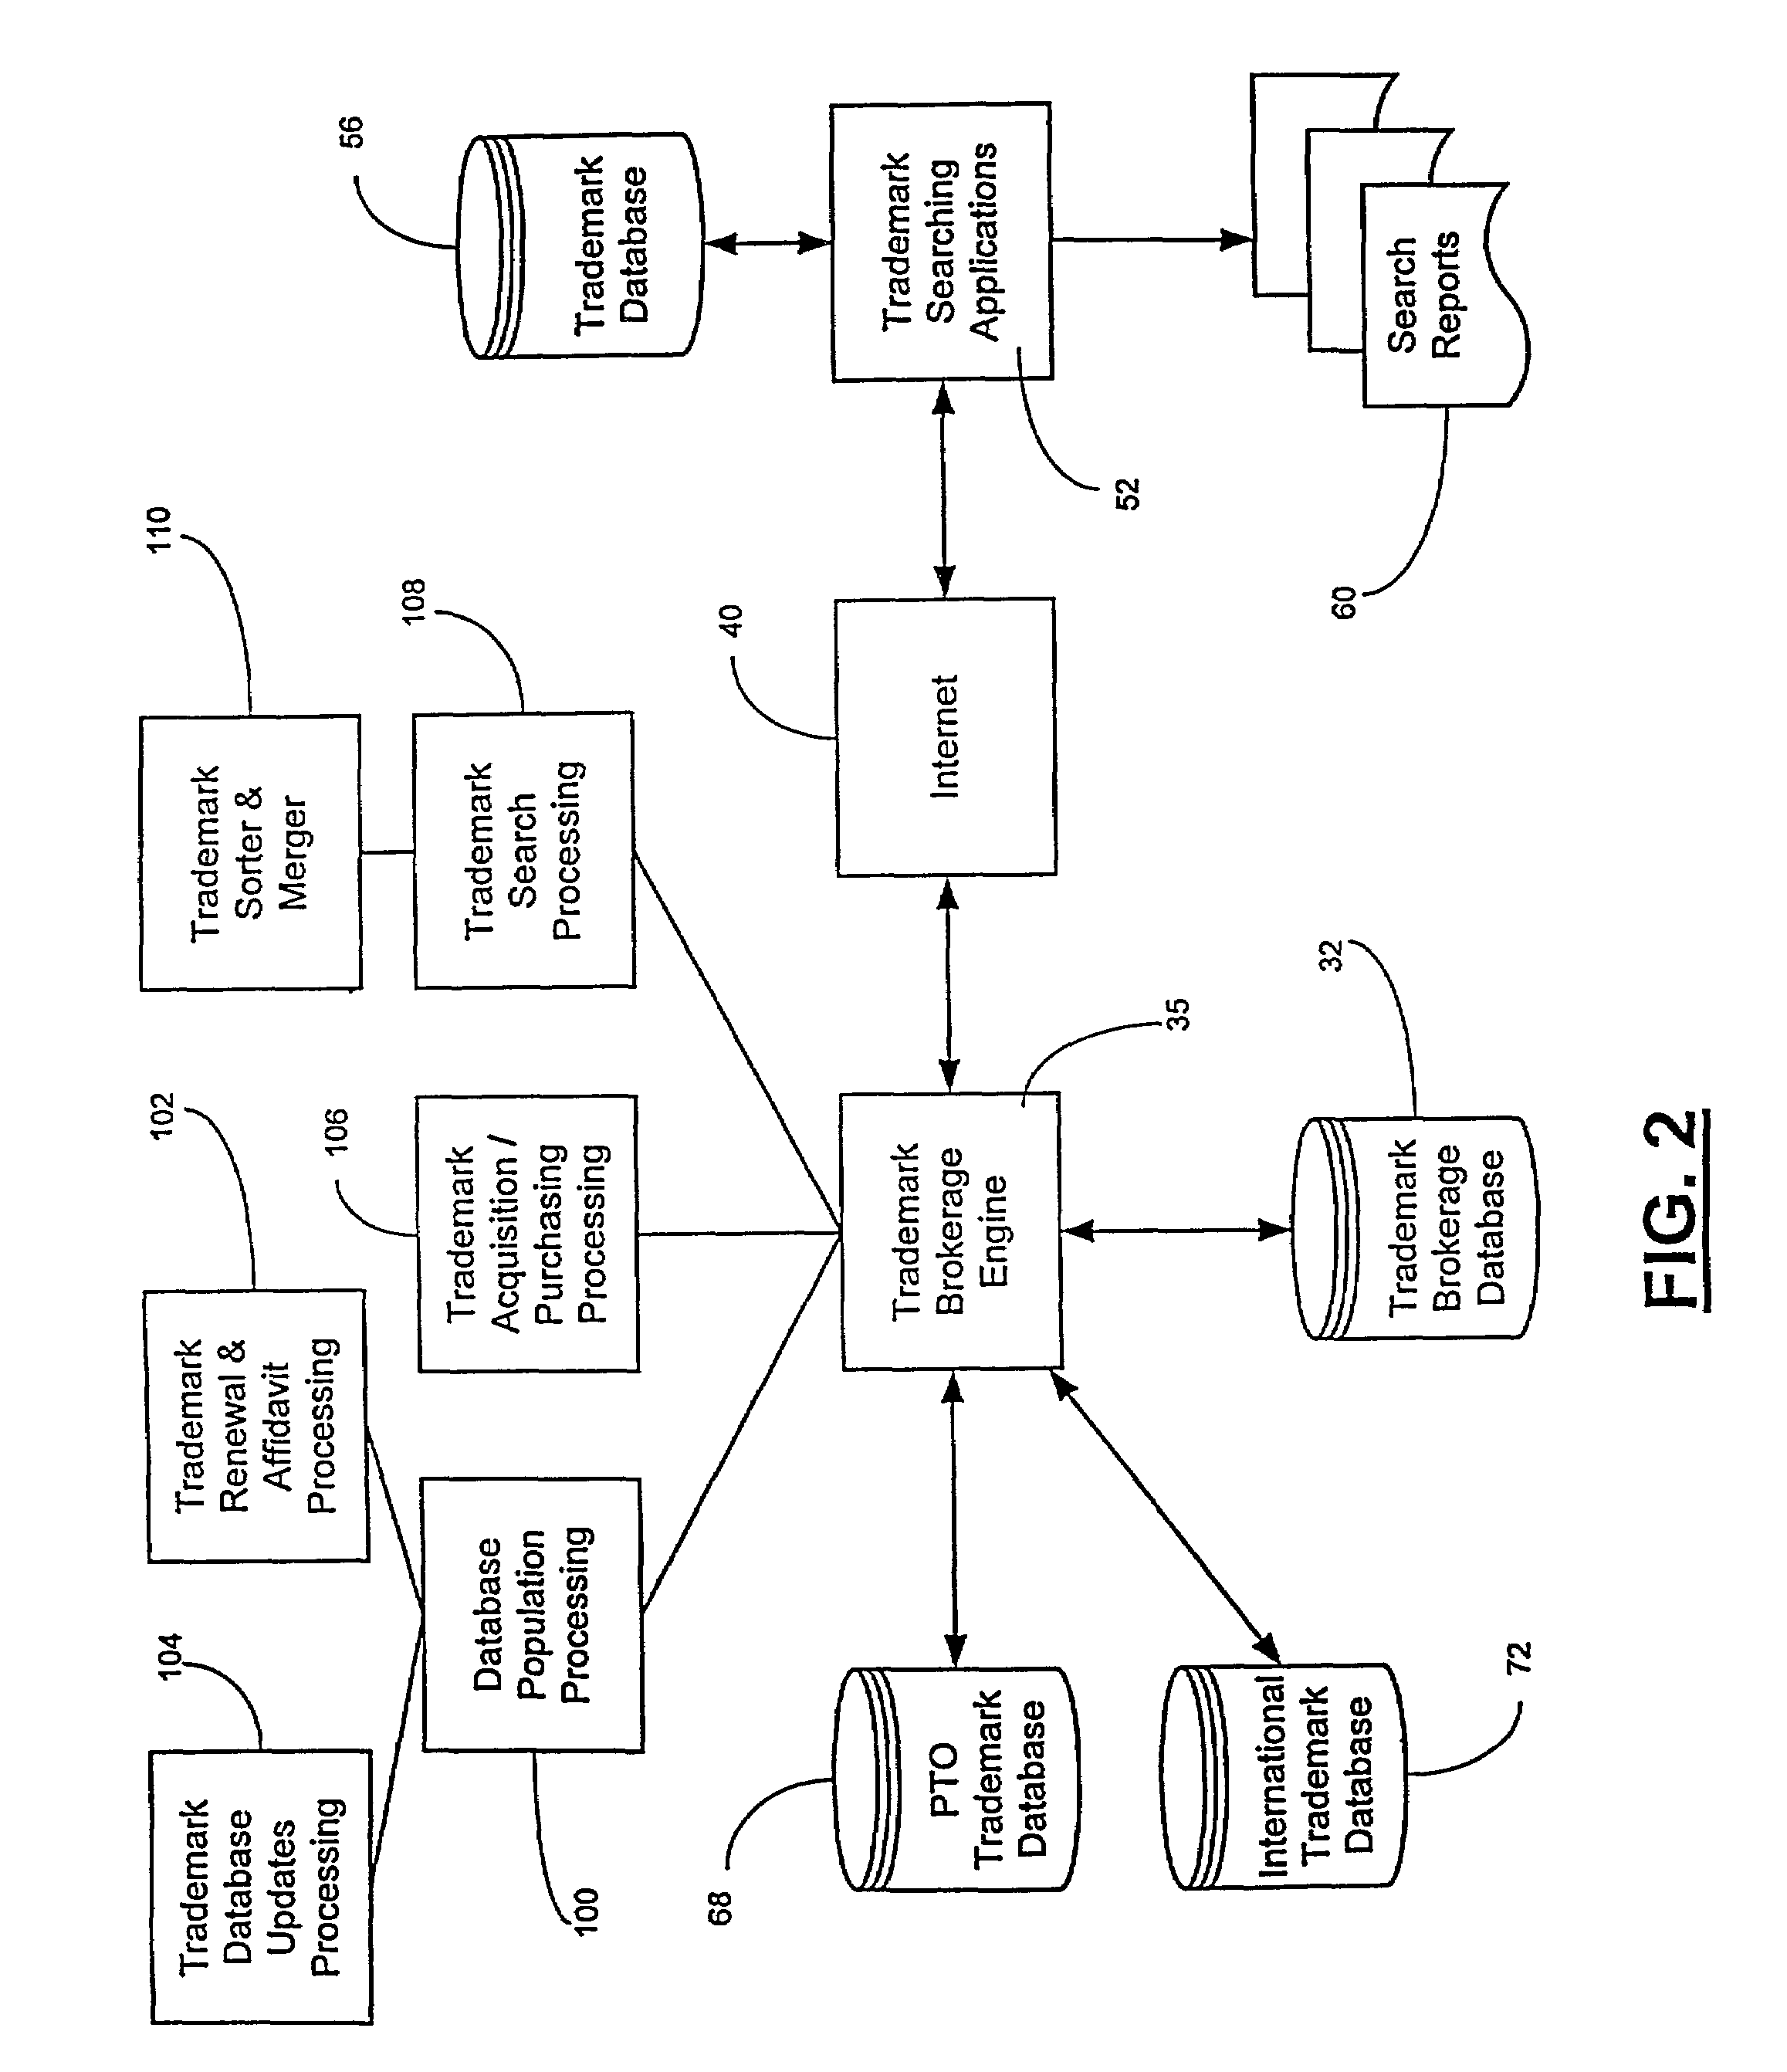 Computer-implemented trademark brokerage network